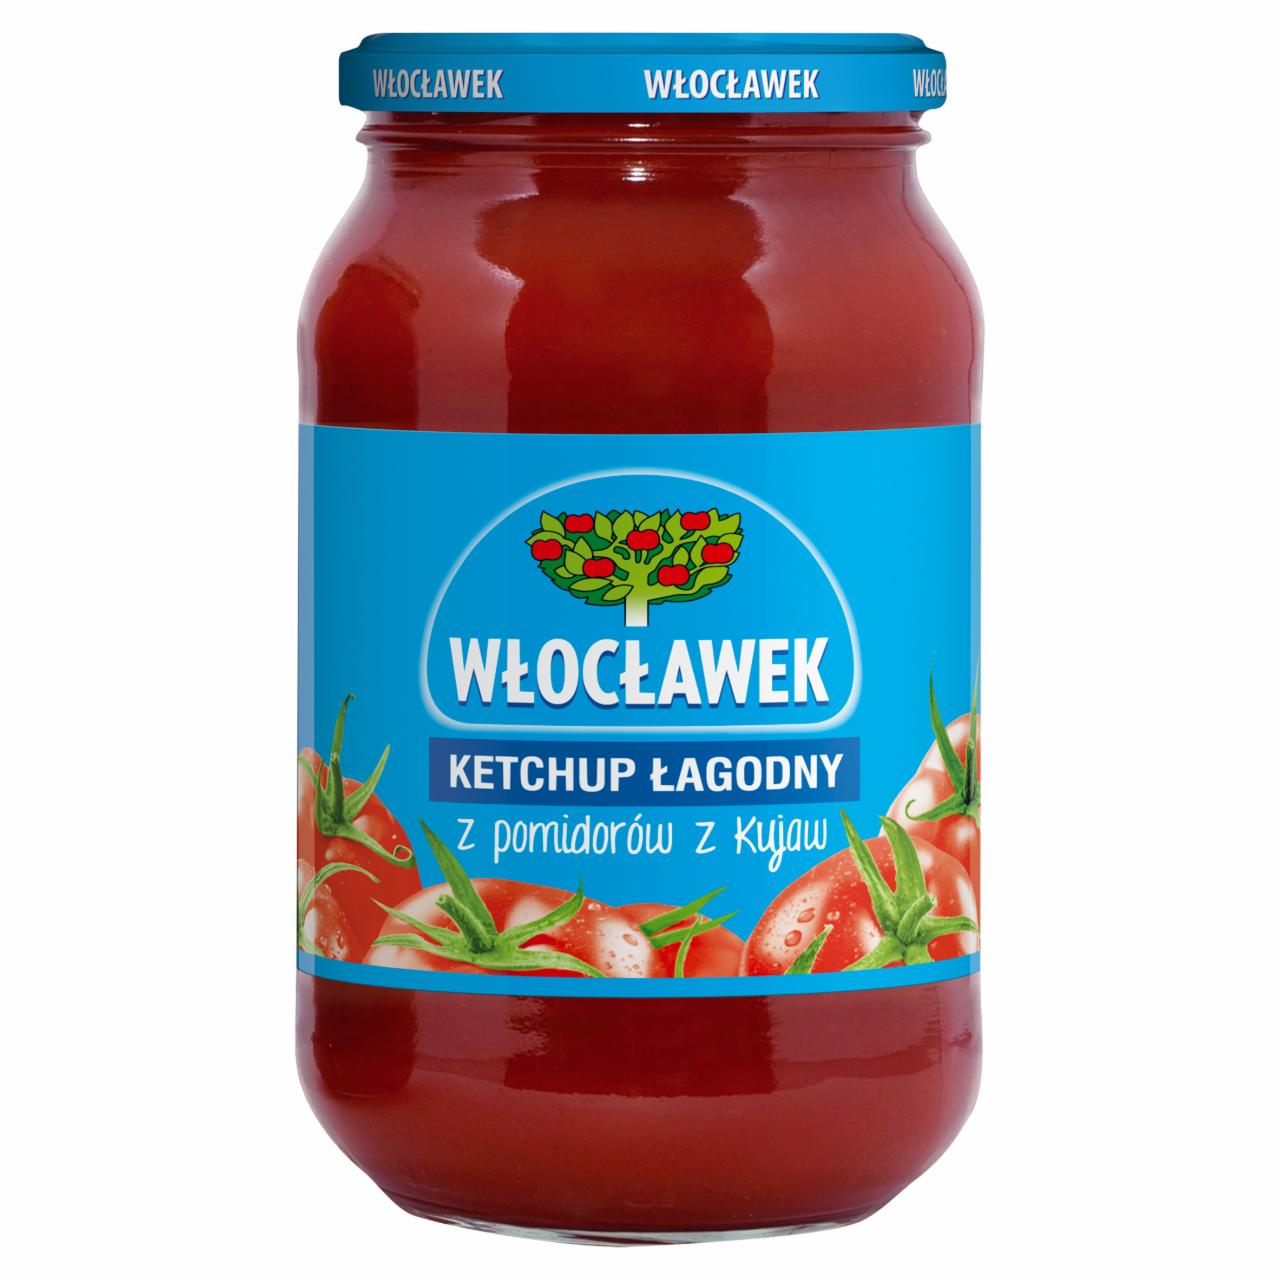 Zdjęcia - Włocławek Ketchup łagodny 970 g